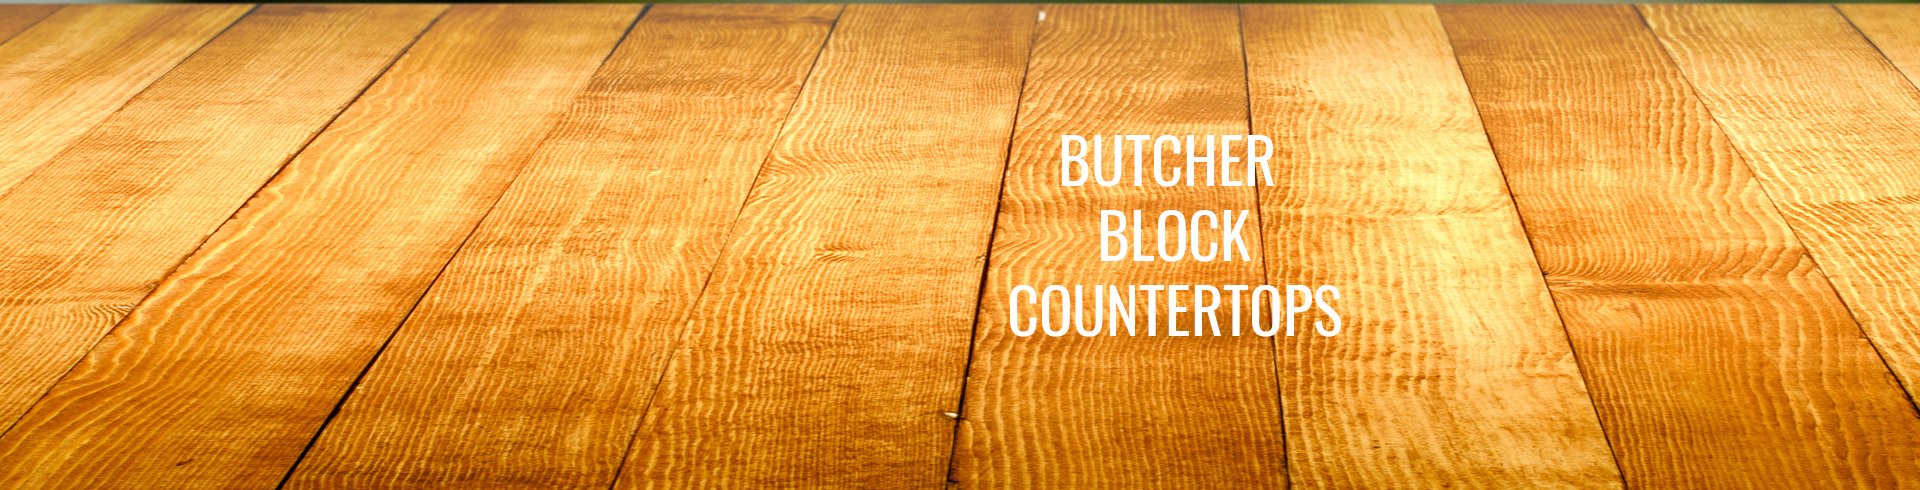 Butcher Block Countertops Rc Willey Blog